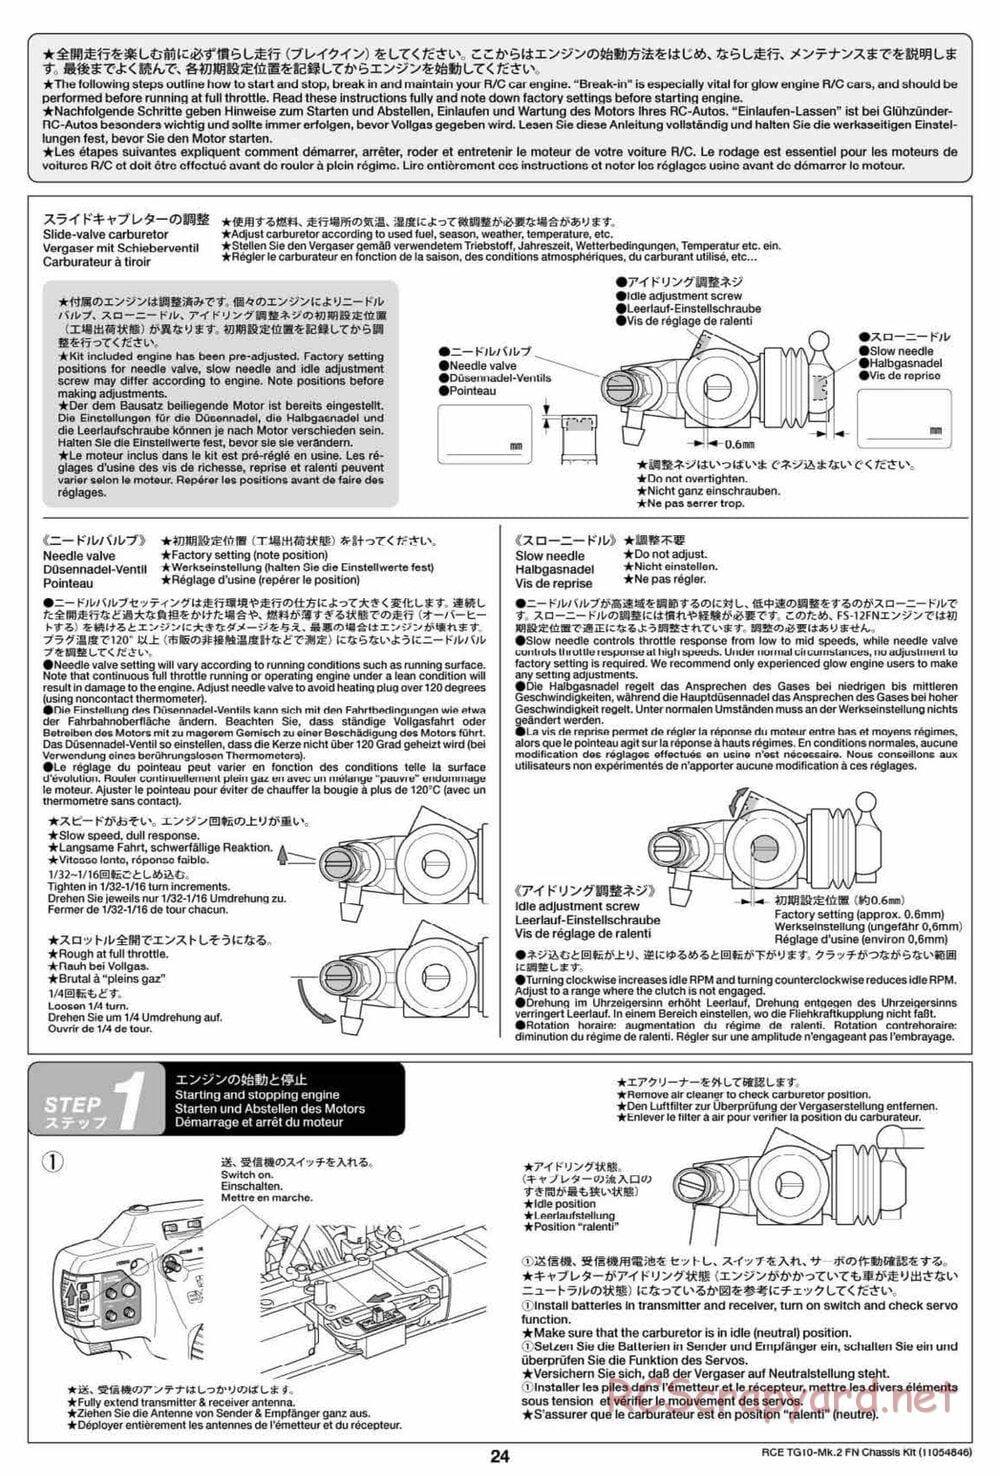 Tamiya - TG10 Mk.2 FN Chassis - Manual - Page 24